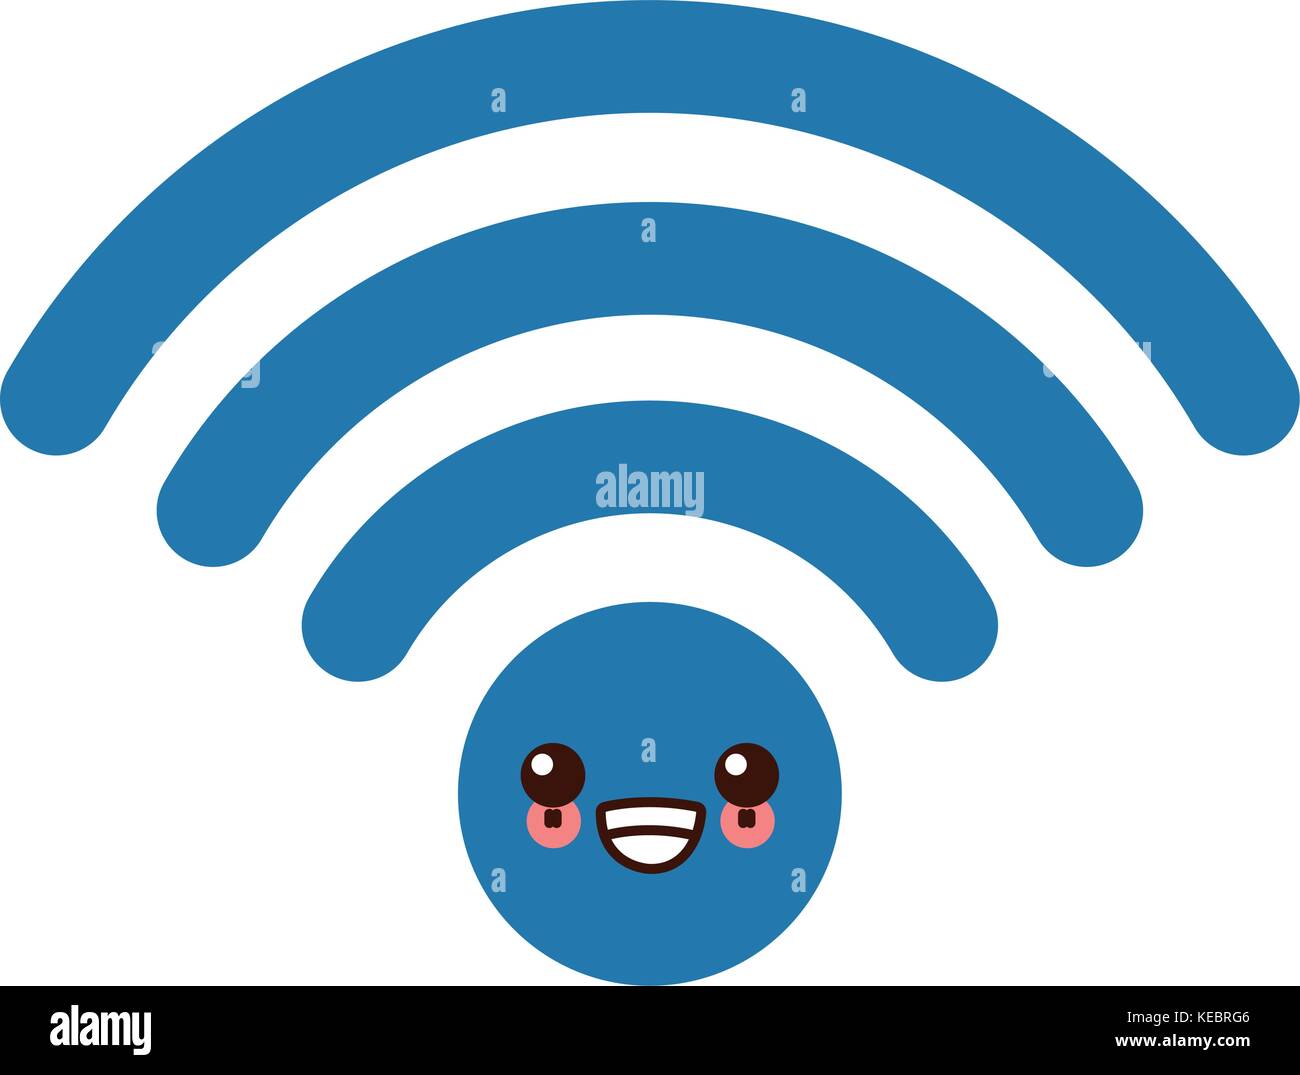 Wifi internet symbol kawaii cute cartoon Stock Vector